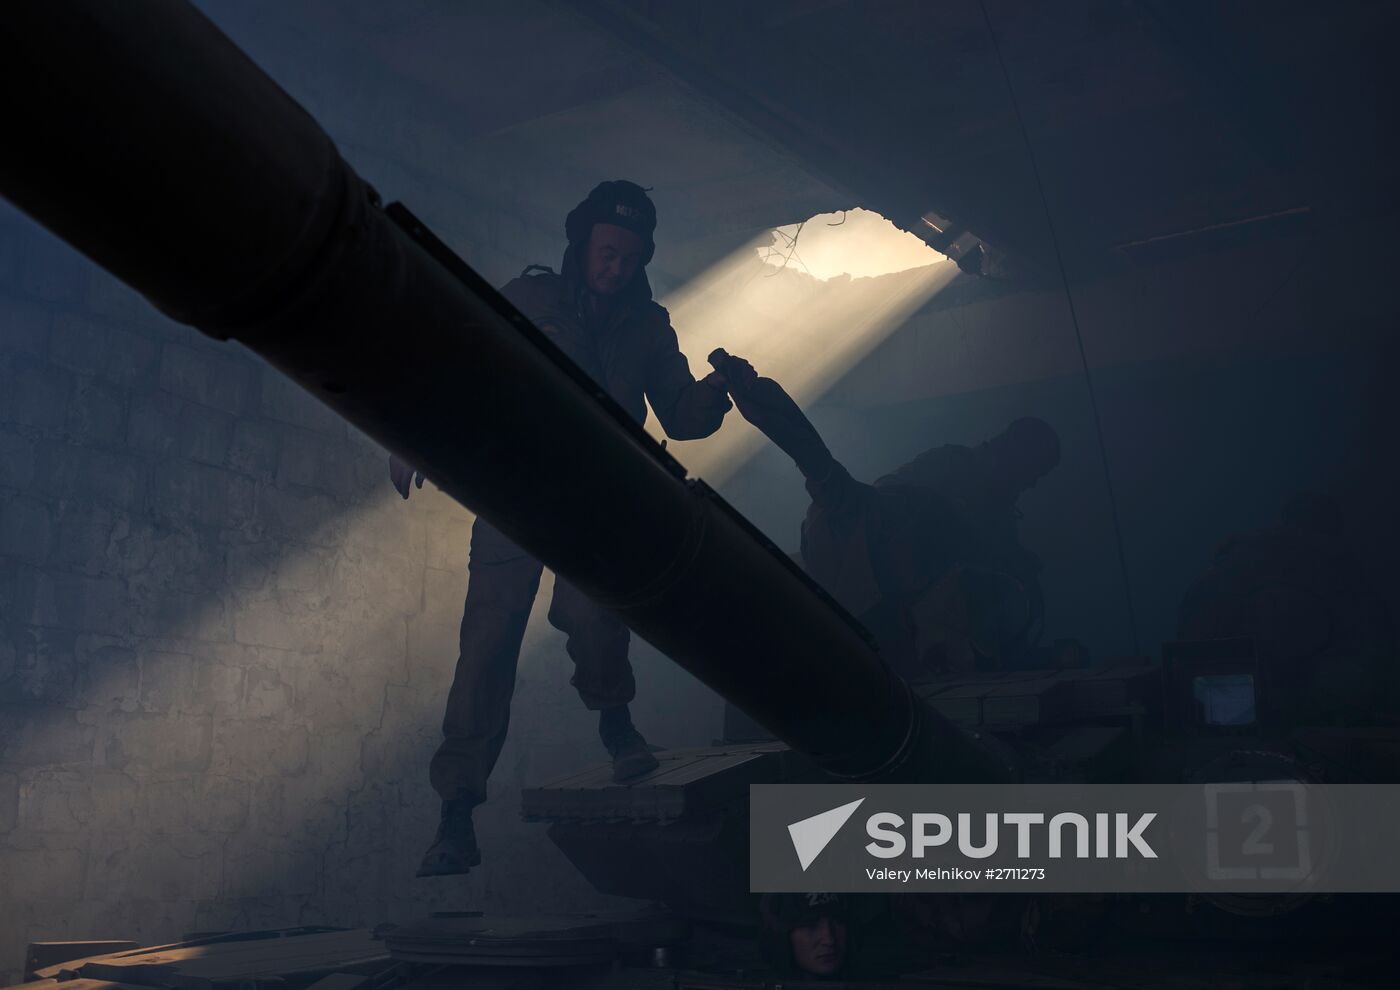 Withdrawal of weapons below 100mm began in Luhansk People's Republic